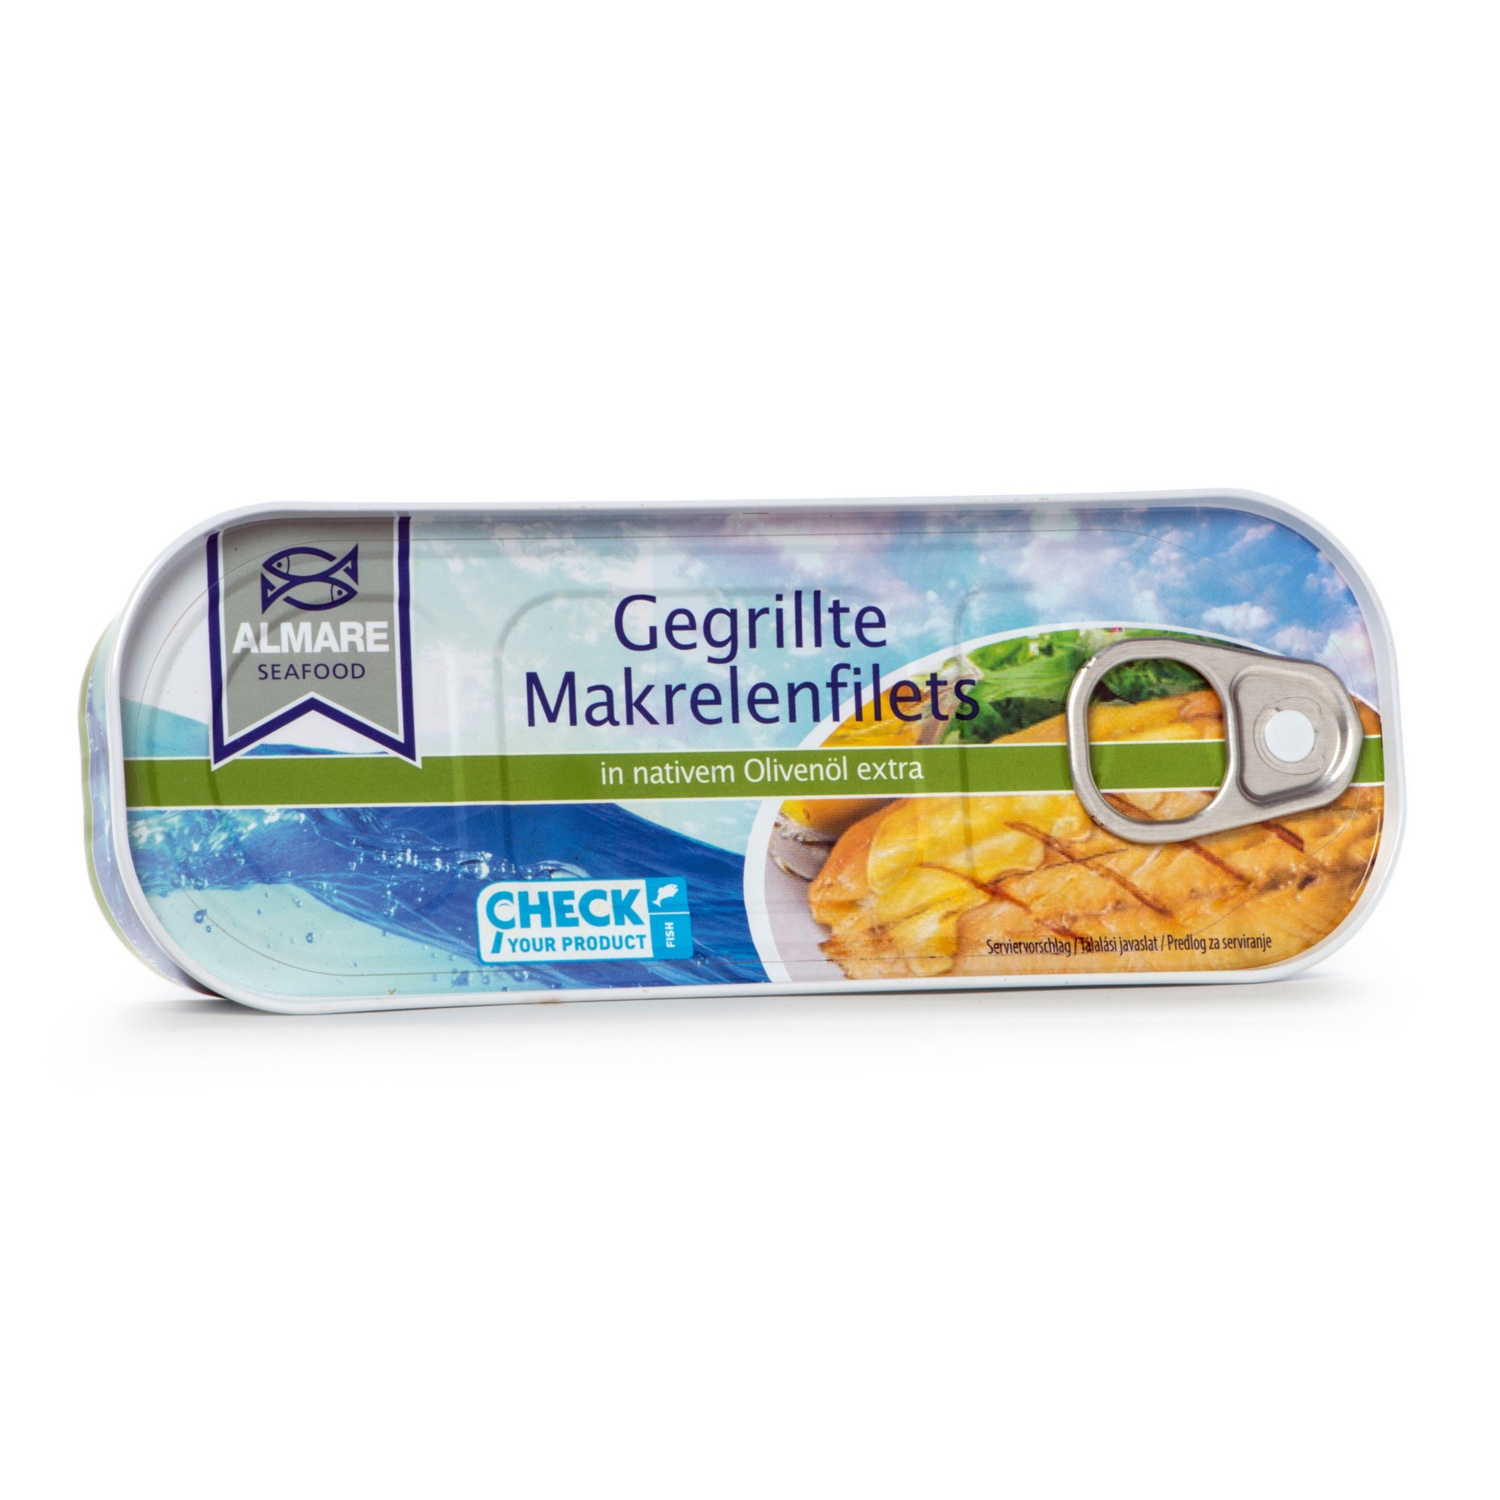 ALMARE SEAFOOD Gegrillte Makrelenfilets, Olivenöl